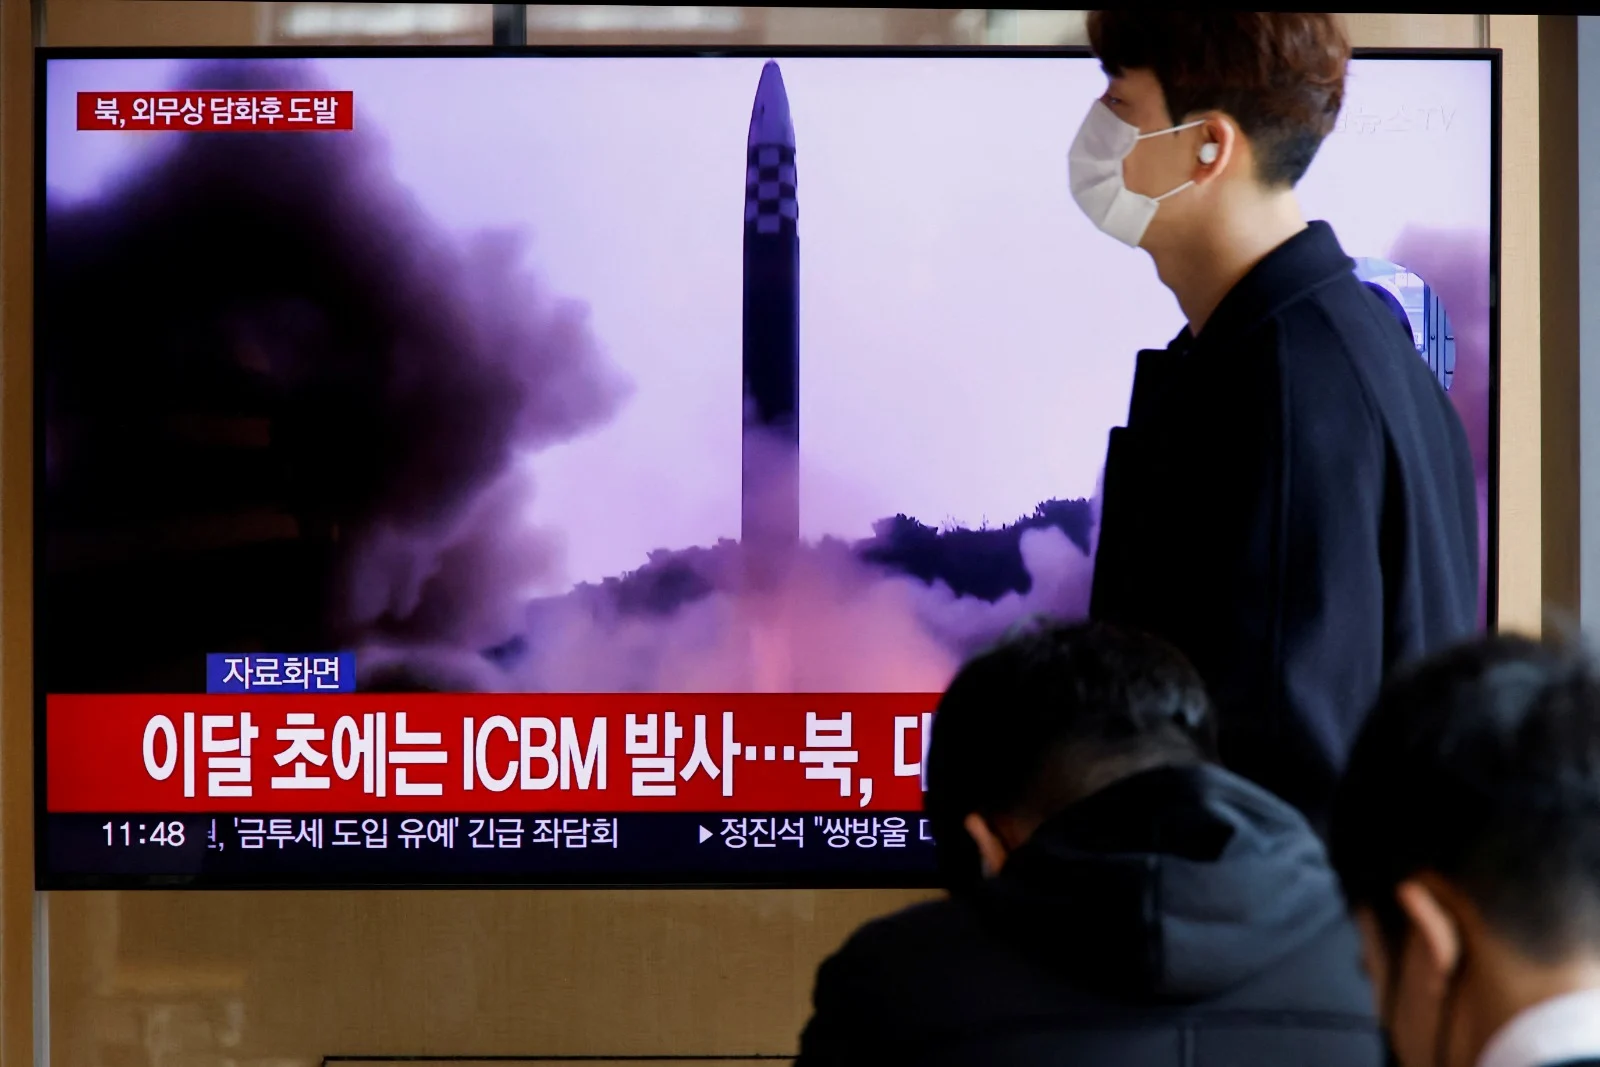 אזרחים בסיאול בירת דרום קוריאה צופים בדיווחי החדשות על שיגור הטיל מצפון קוריאה